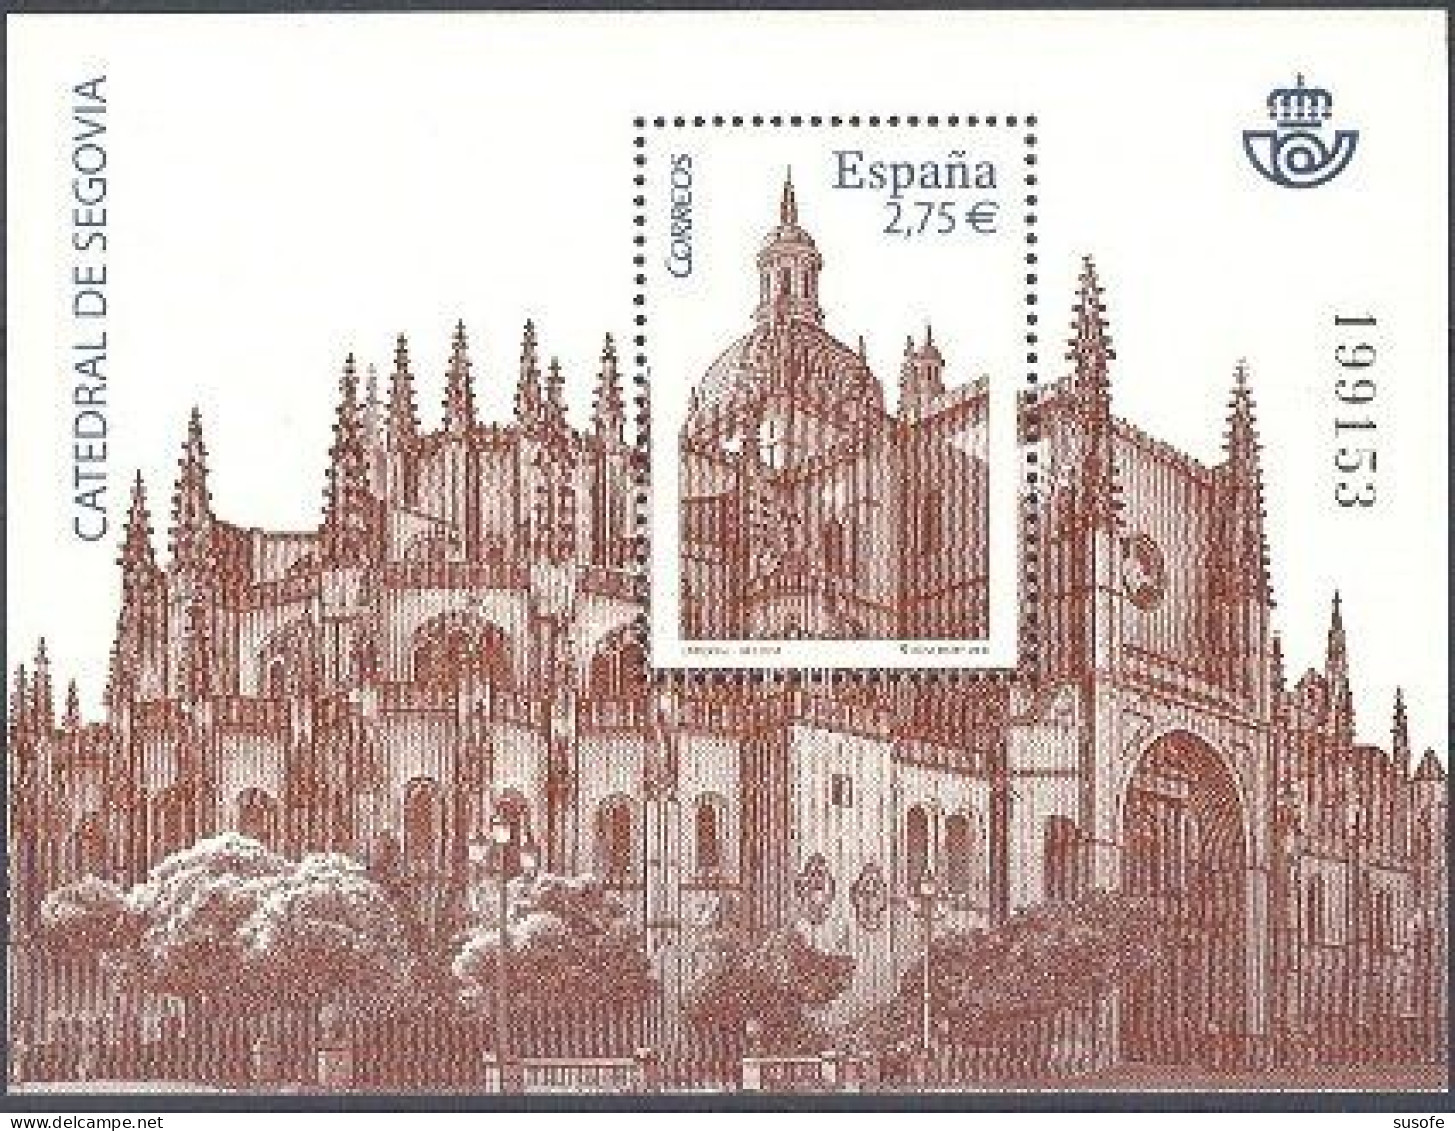 España 2010 Edifil 4580 Sello ** HB Catedral De Segovia Michel BL196 Yvert BF188 Spain Stamp Timbre Espagne Briefmarke - Nuevos